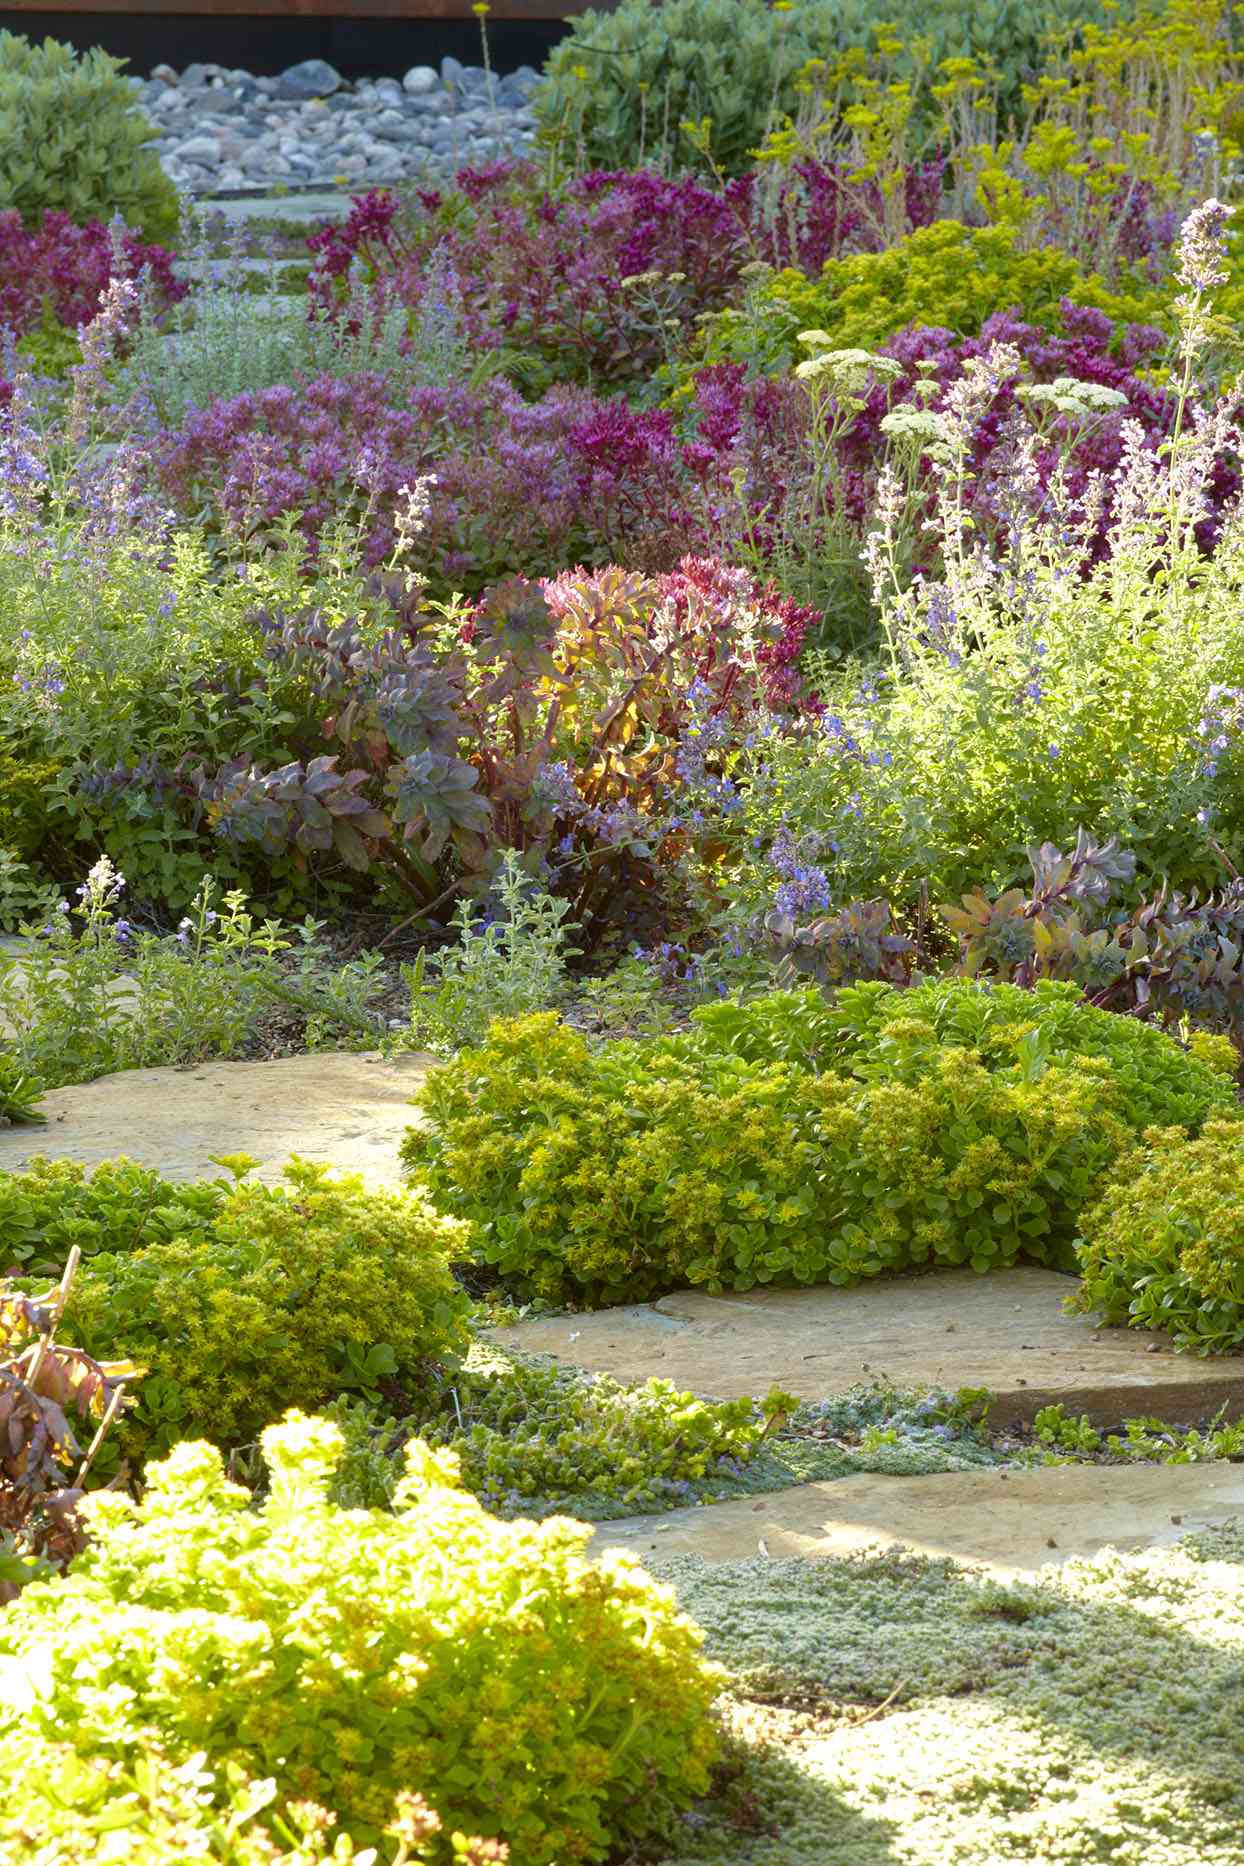 enter the country gardens magazine garden awards | better homes